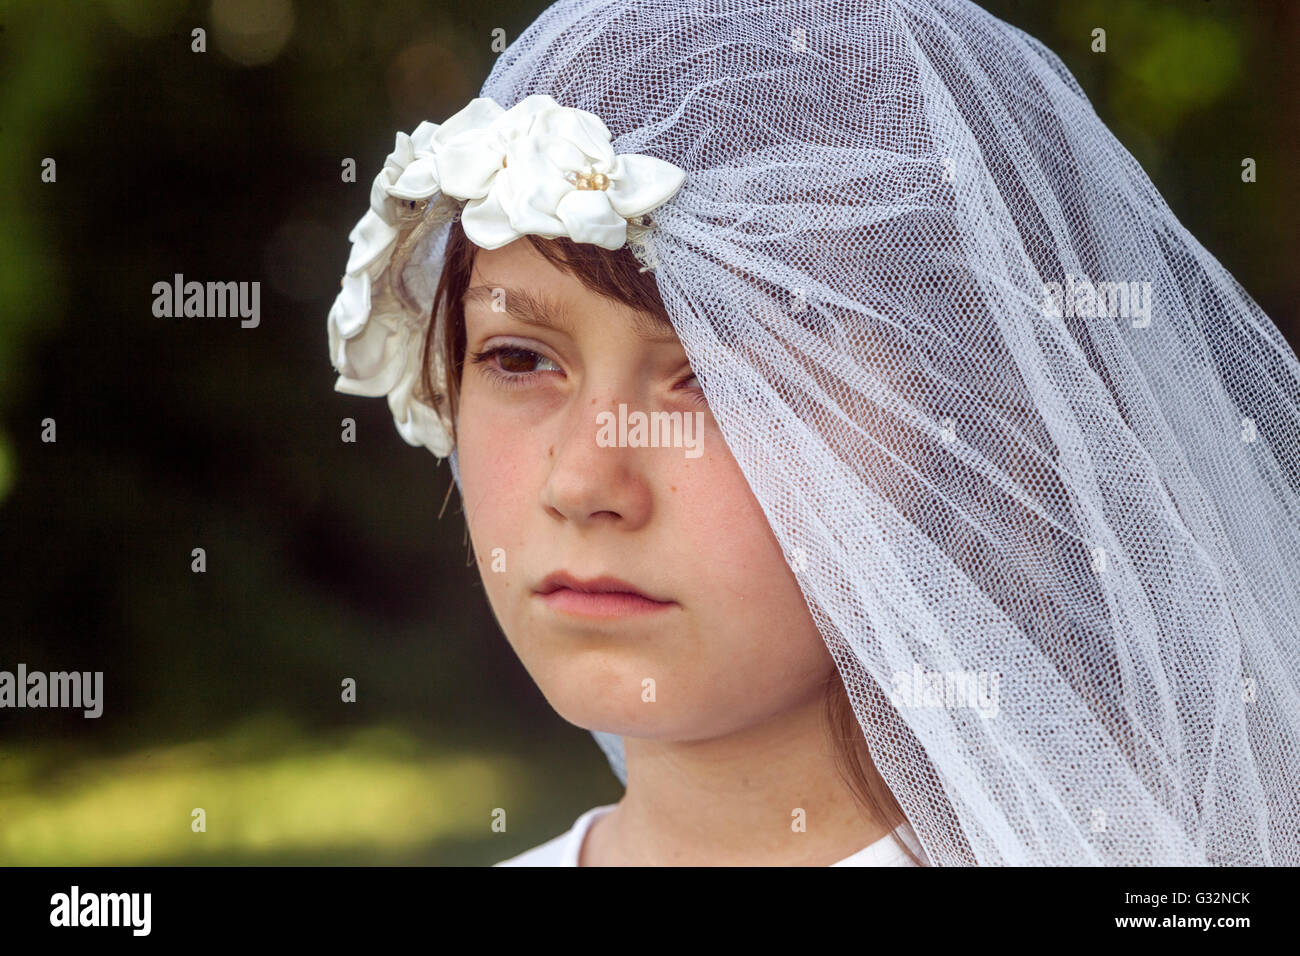 Alter der Unschuld 6-7 Jahre altes Mädchen Weiße Braut Schleier Spiel Kindergesicht trauriger Ausdruck trauriges Mädchen außerhalb Kind weibliche Kleidung Preteen Gefühl Gesicht Stockfoto